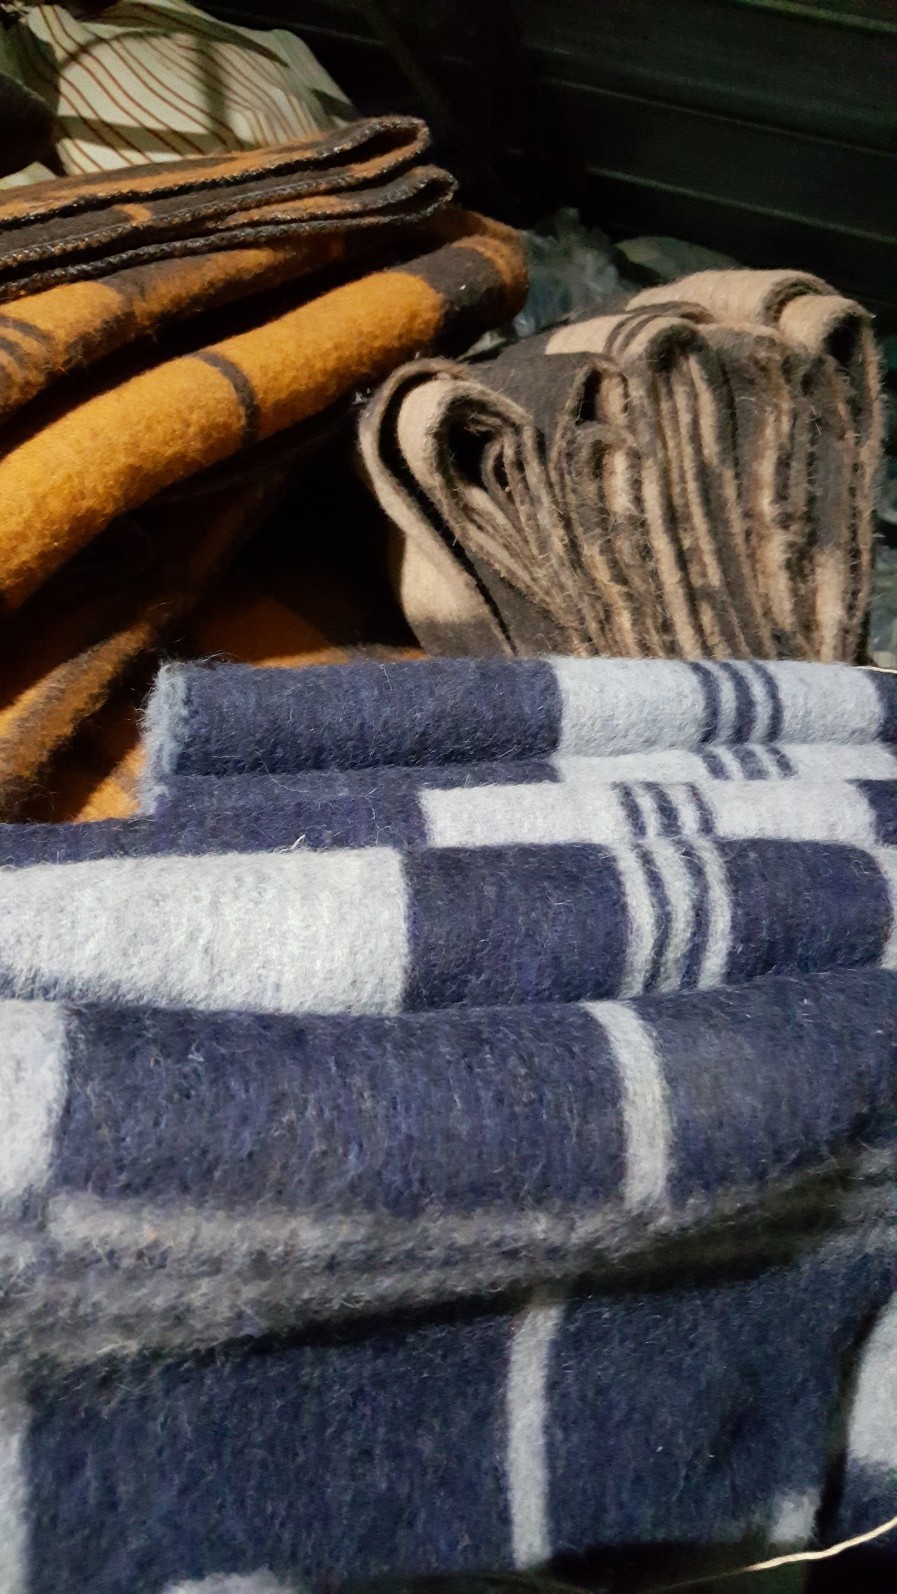 Одеяла полушерстяные оптом с резерва - фотография